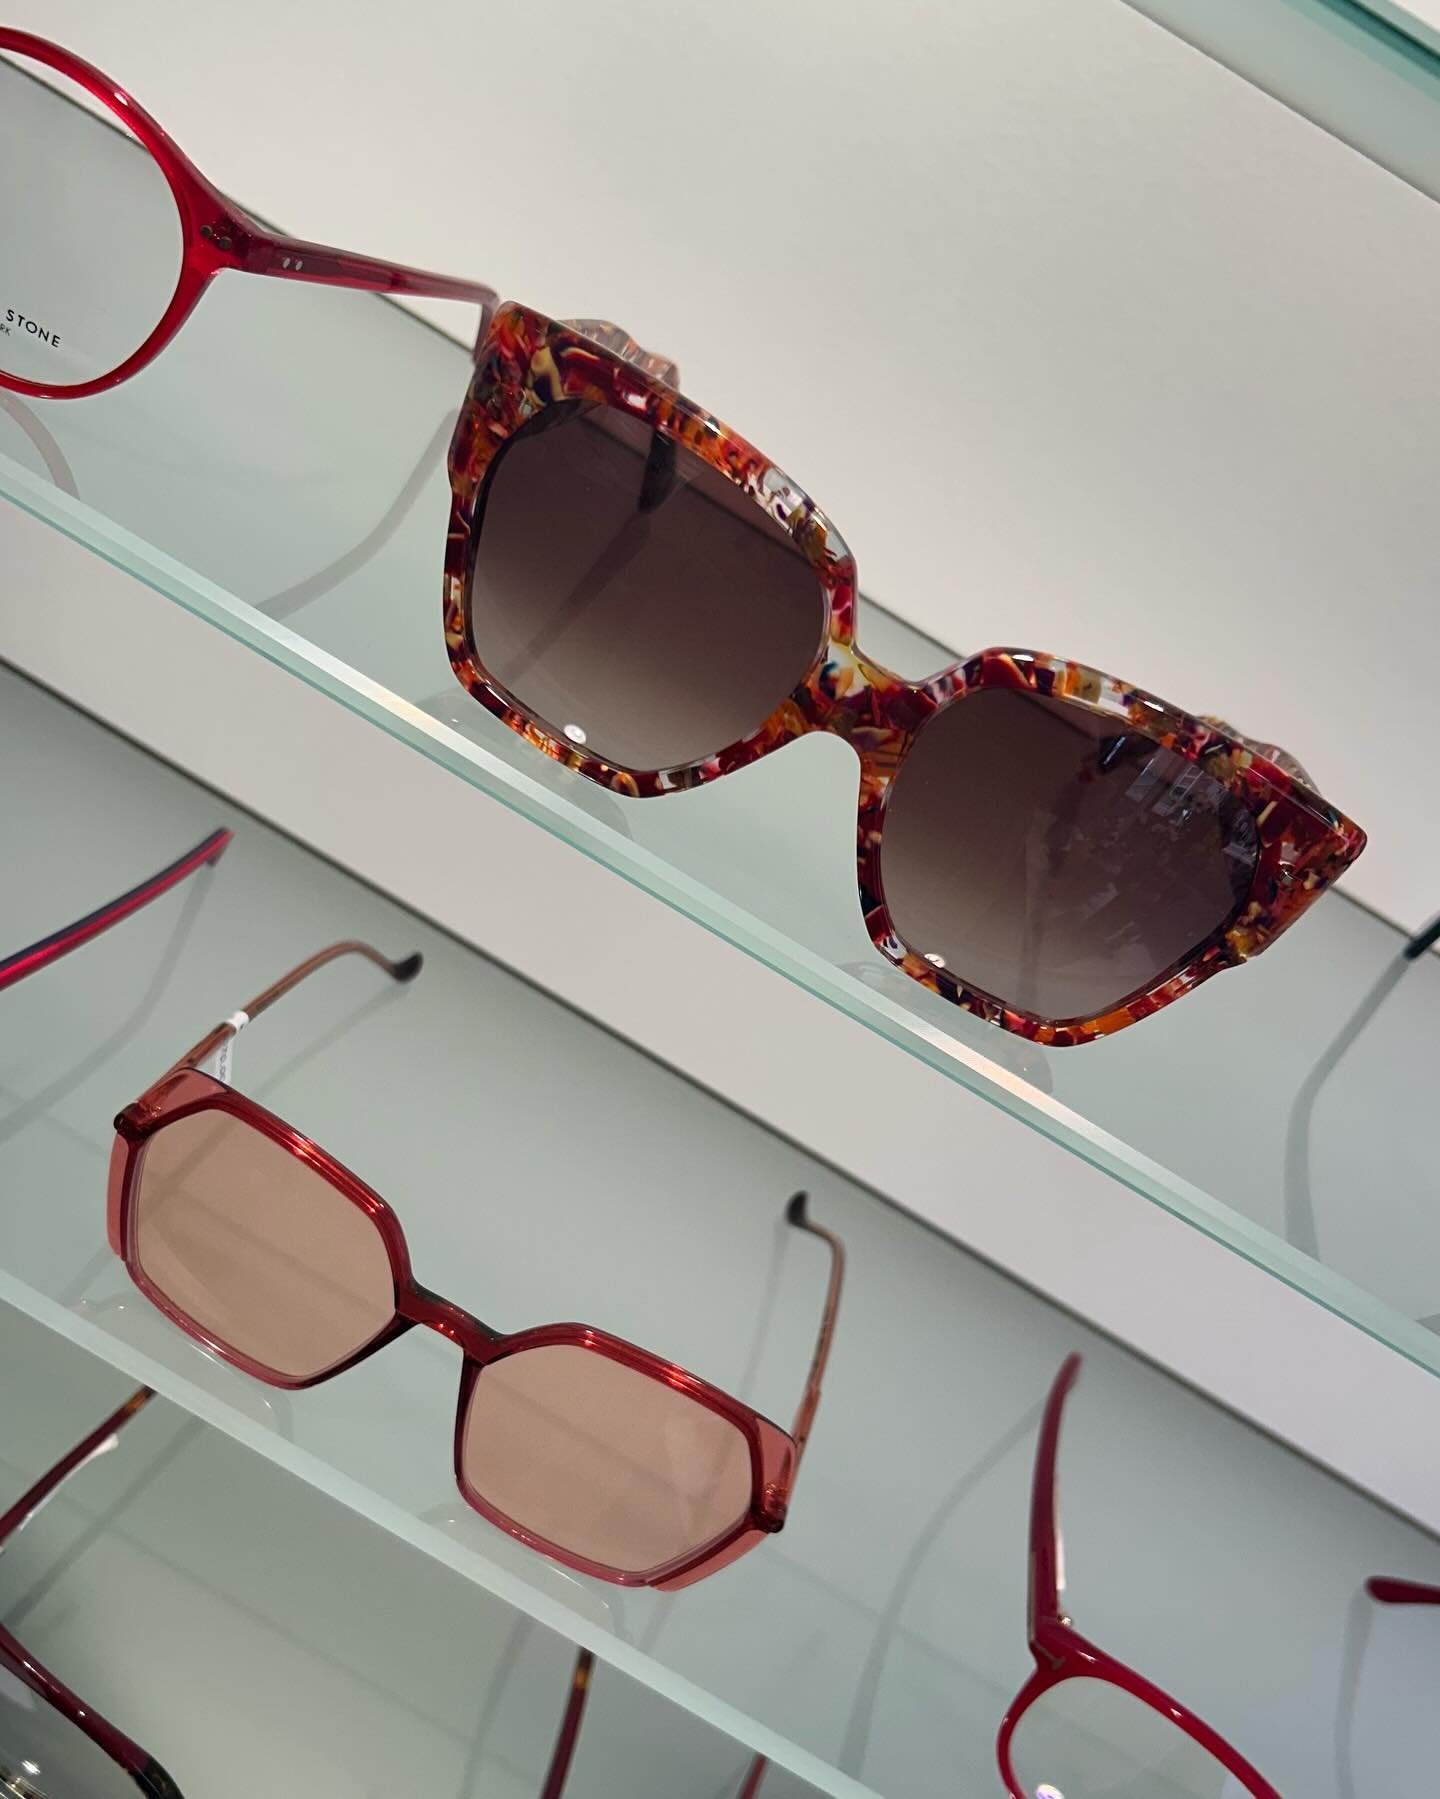 Nyheder i butikken fra @lafontparis 🤓 #fedesolbrillerp&aring;hylderne #brillemode #v&aelig;rl&oslash;sebymidte